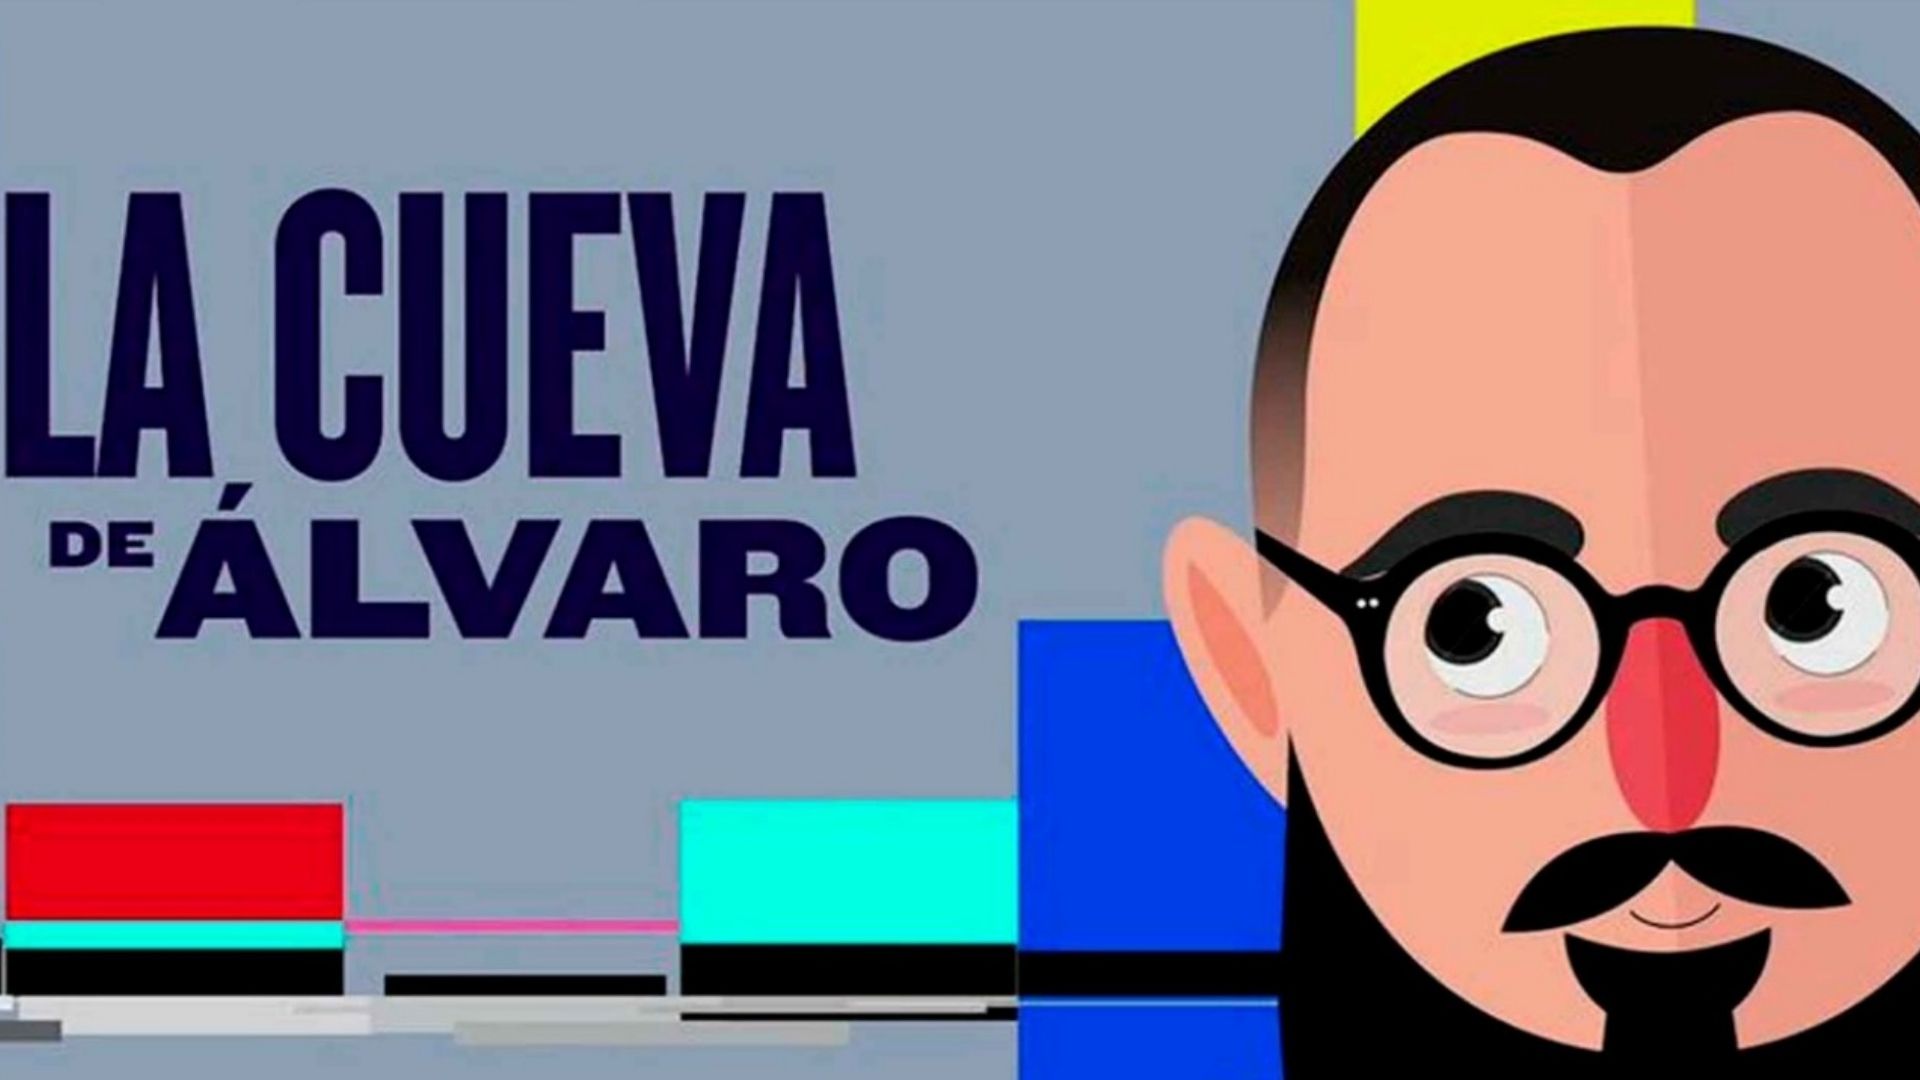 Esta semana en La Cueva de Álvaro de N+ Podcast, el periodista Álvaro Cueva habló con los actores Natalia Téllez y Vince Miranda